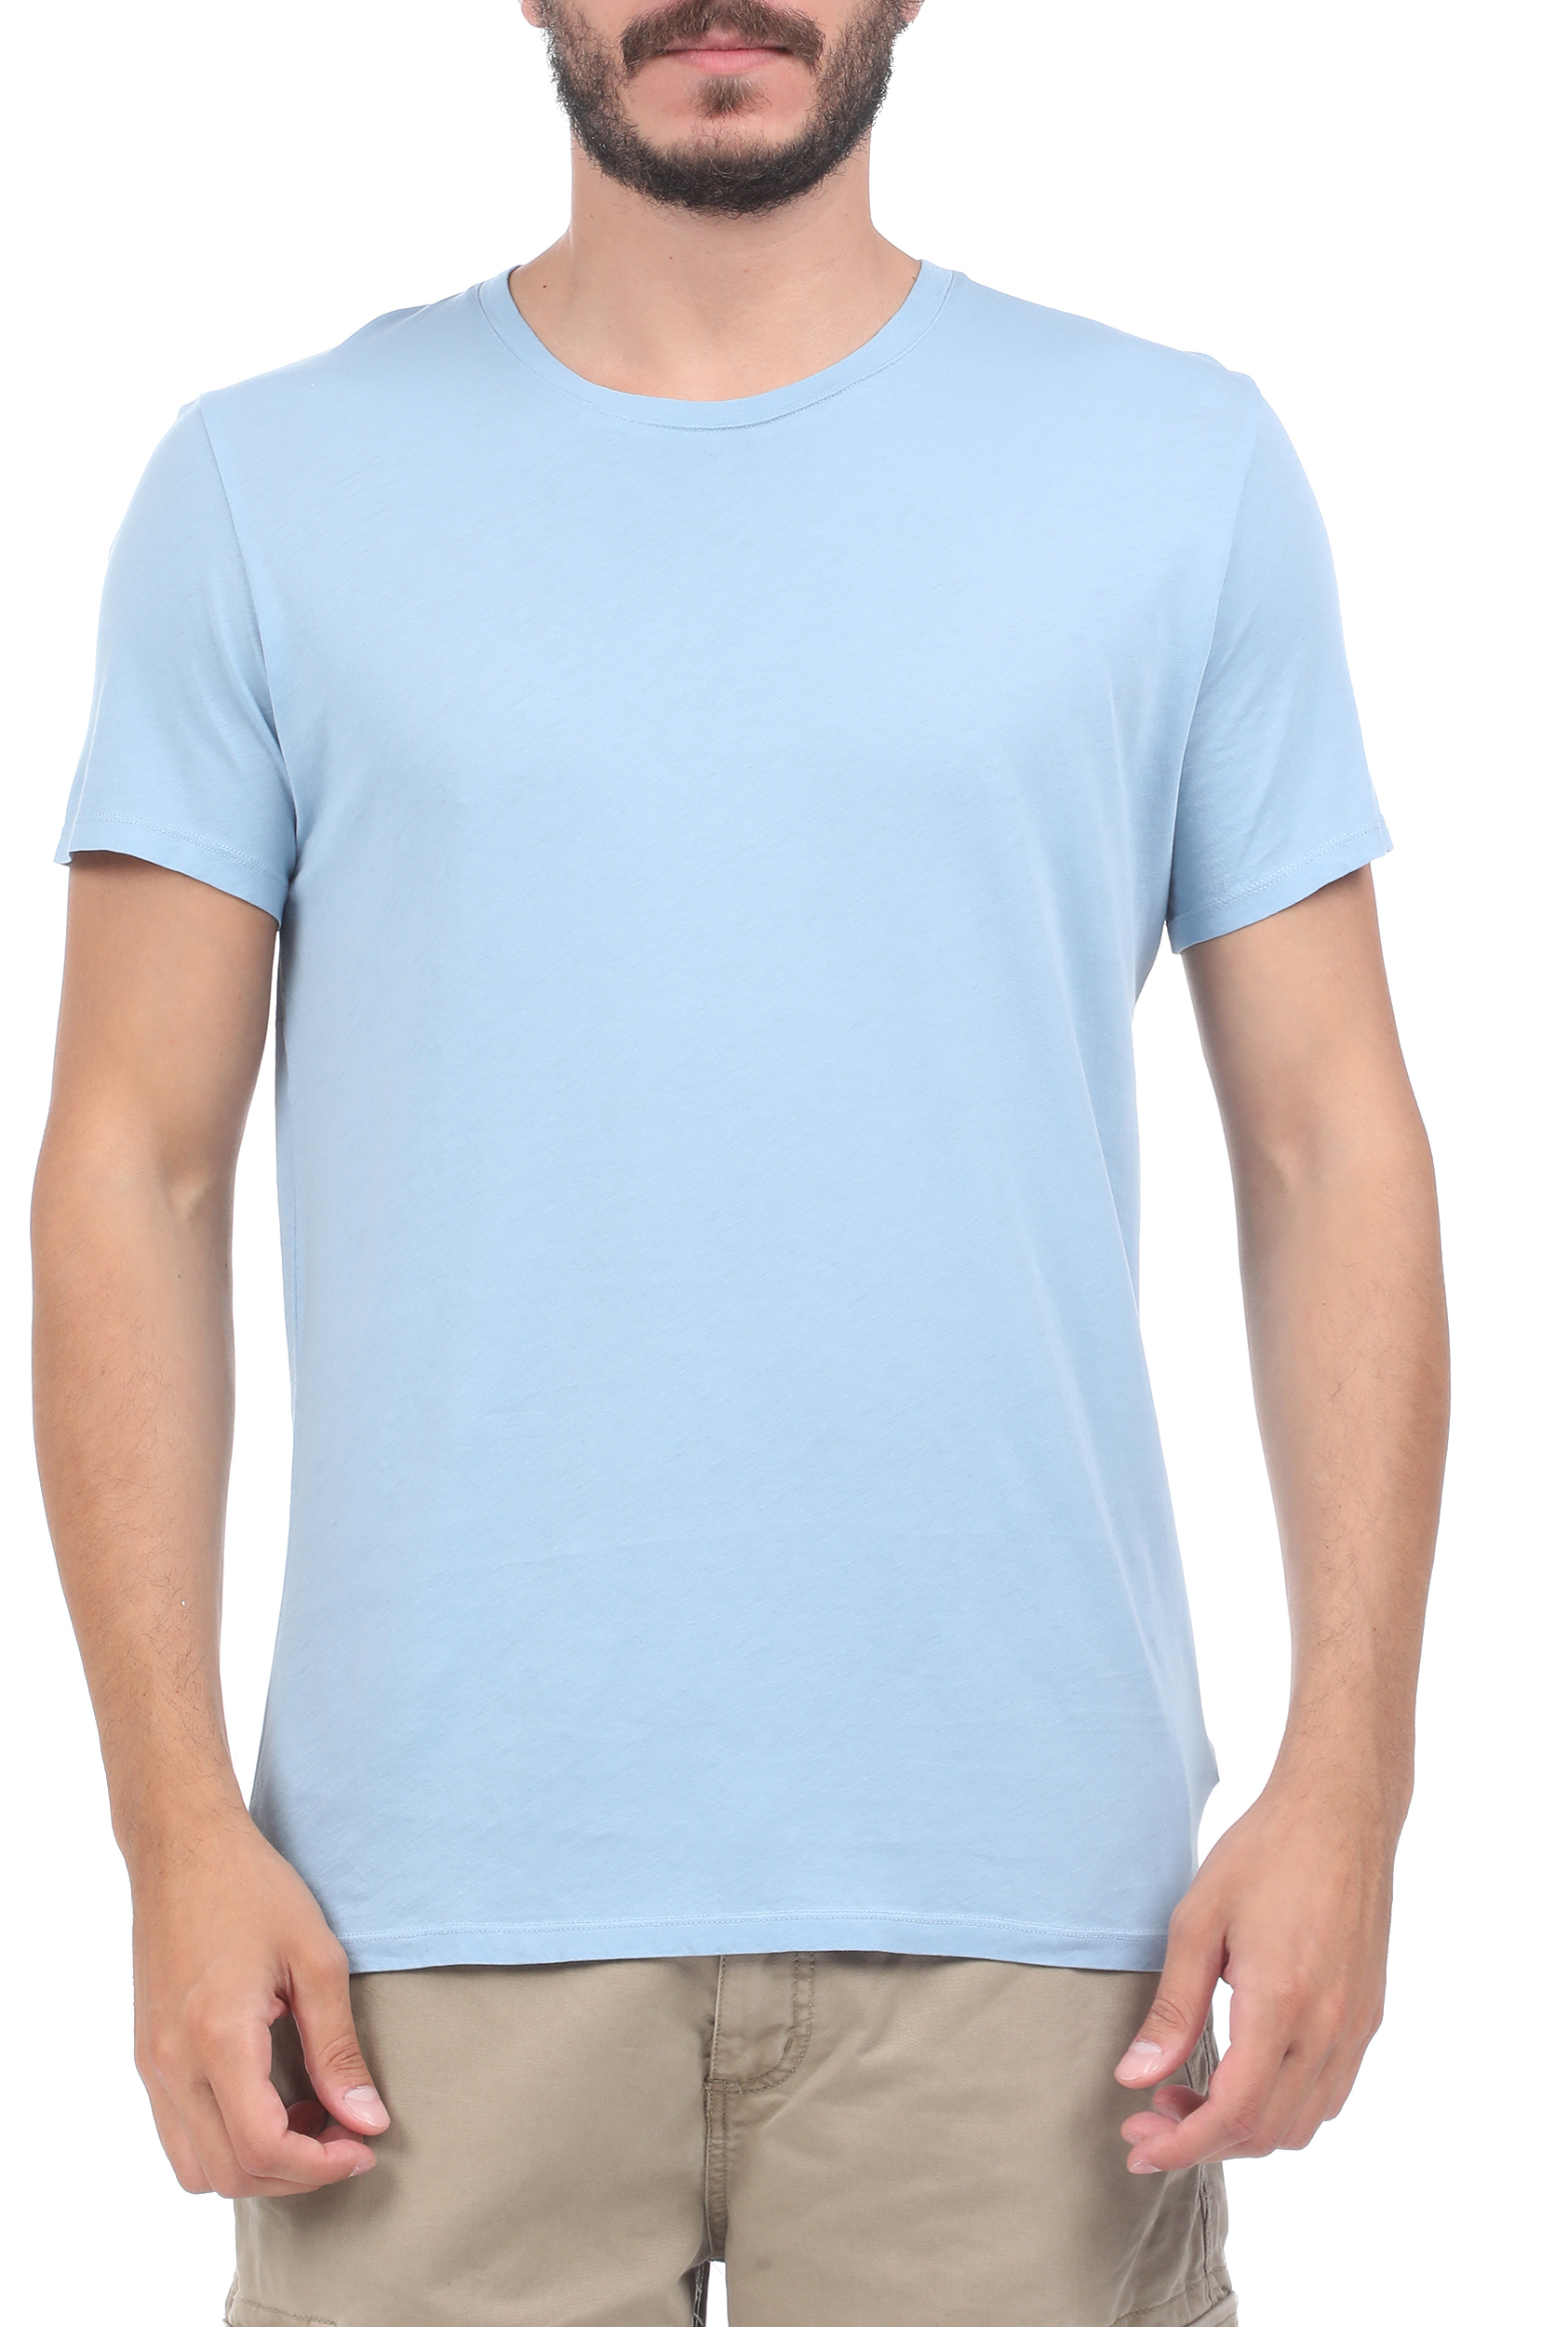 Ανδρικά/Ρούχα/Μπλούζες/Κοντομάνικες AMERICAN VINTAGE - Ανδρική μπλούζα AMERICAN VINTAGE γαλάζια